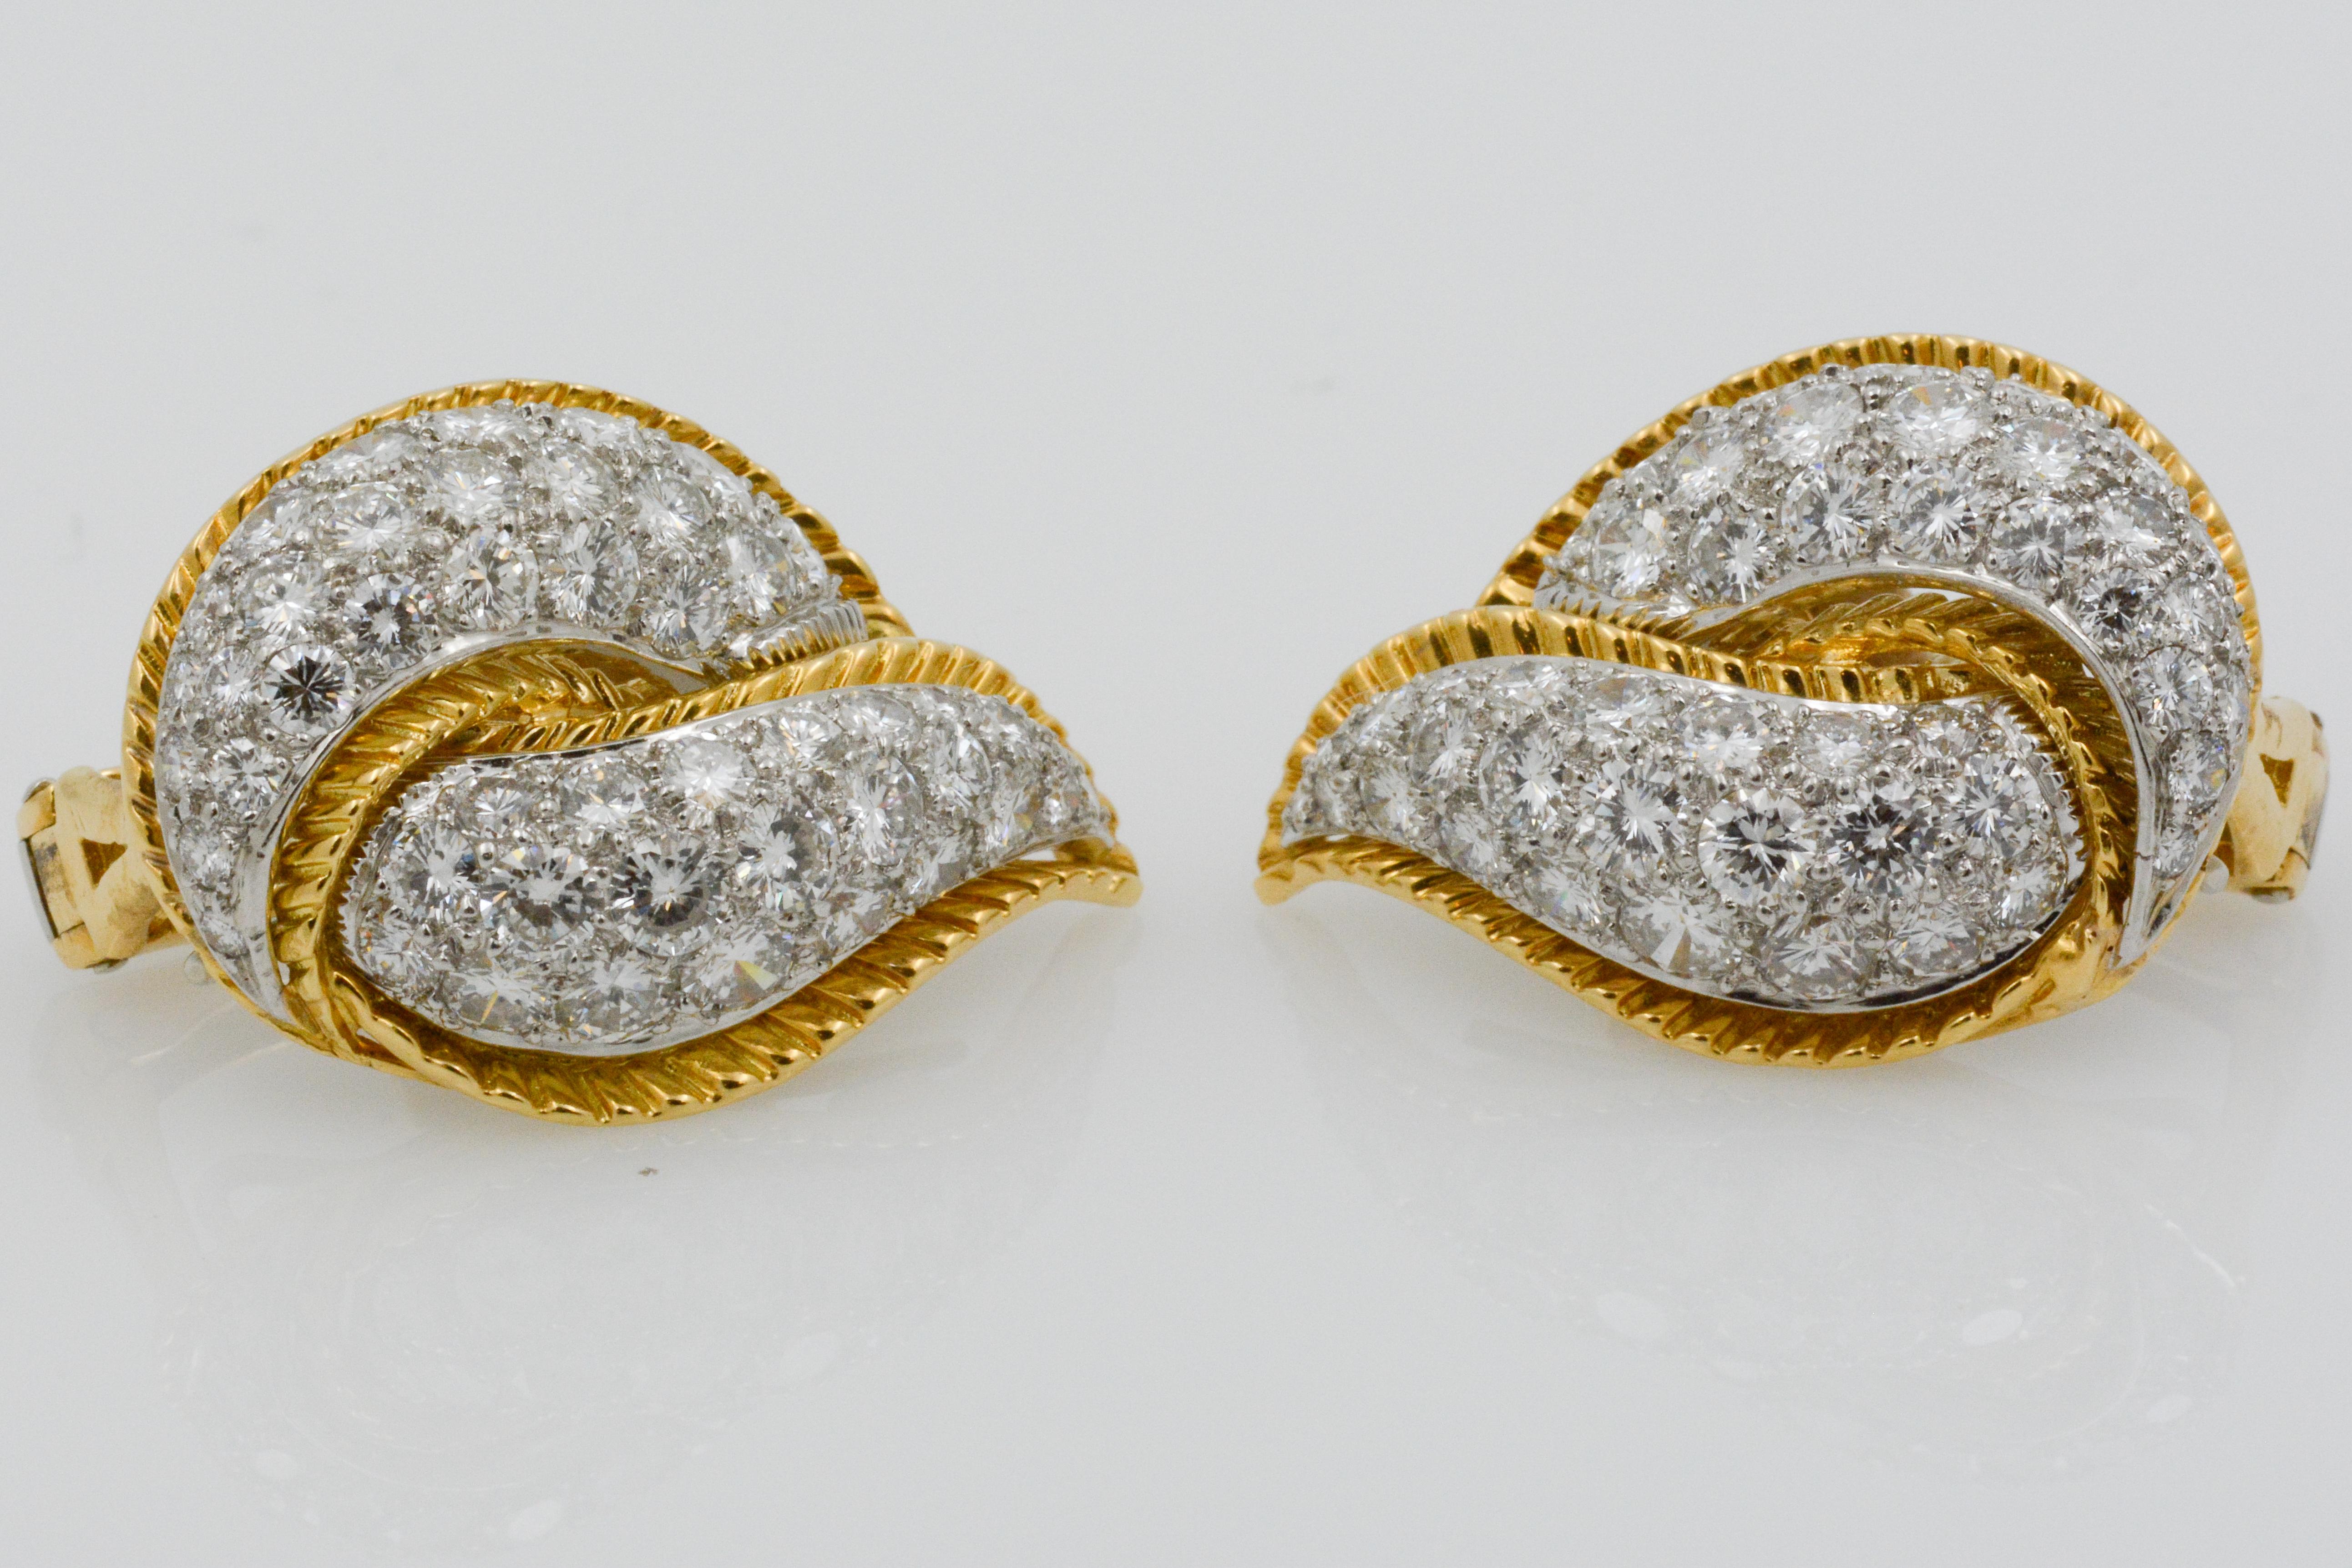 Modele Sterle 5.25 Carat Diamond 18 Karat Yellow Gold Leaf Earrings 8